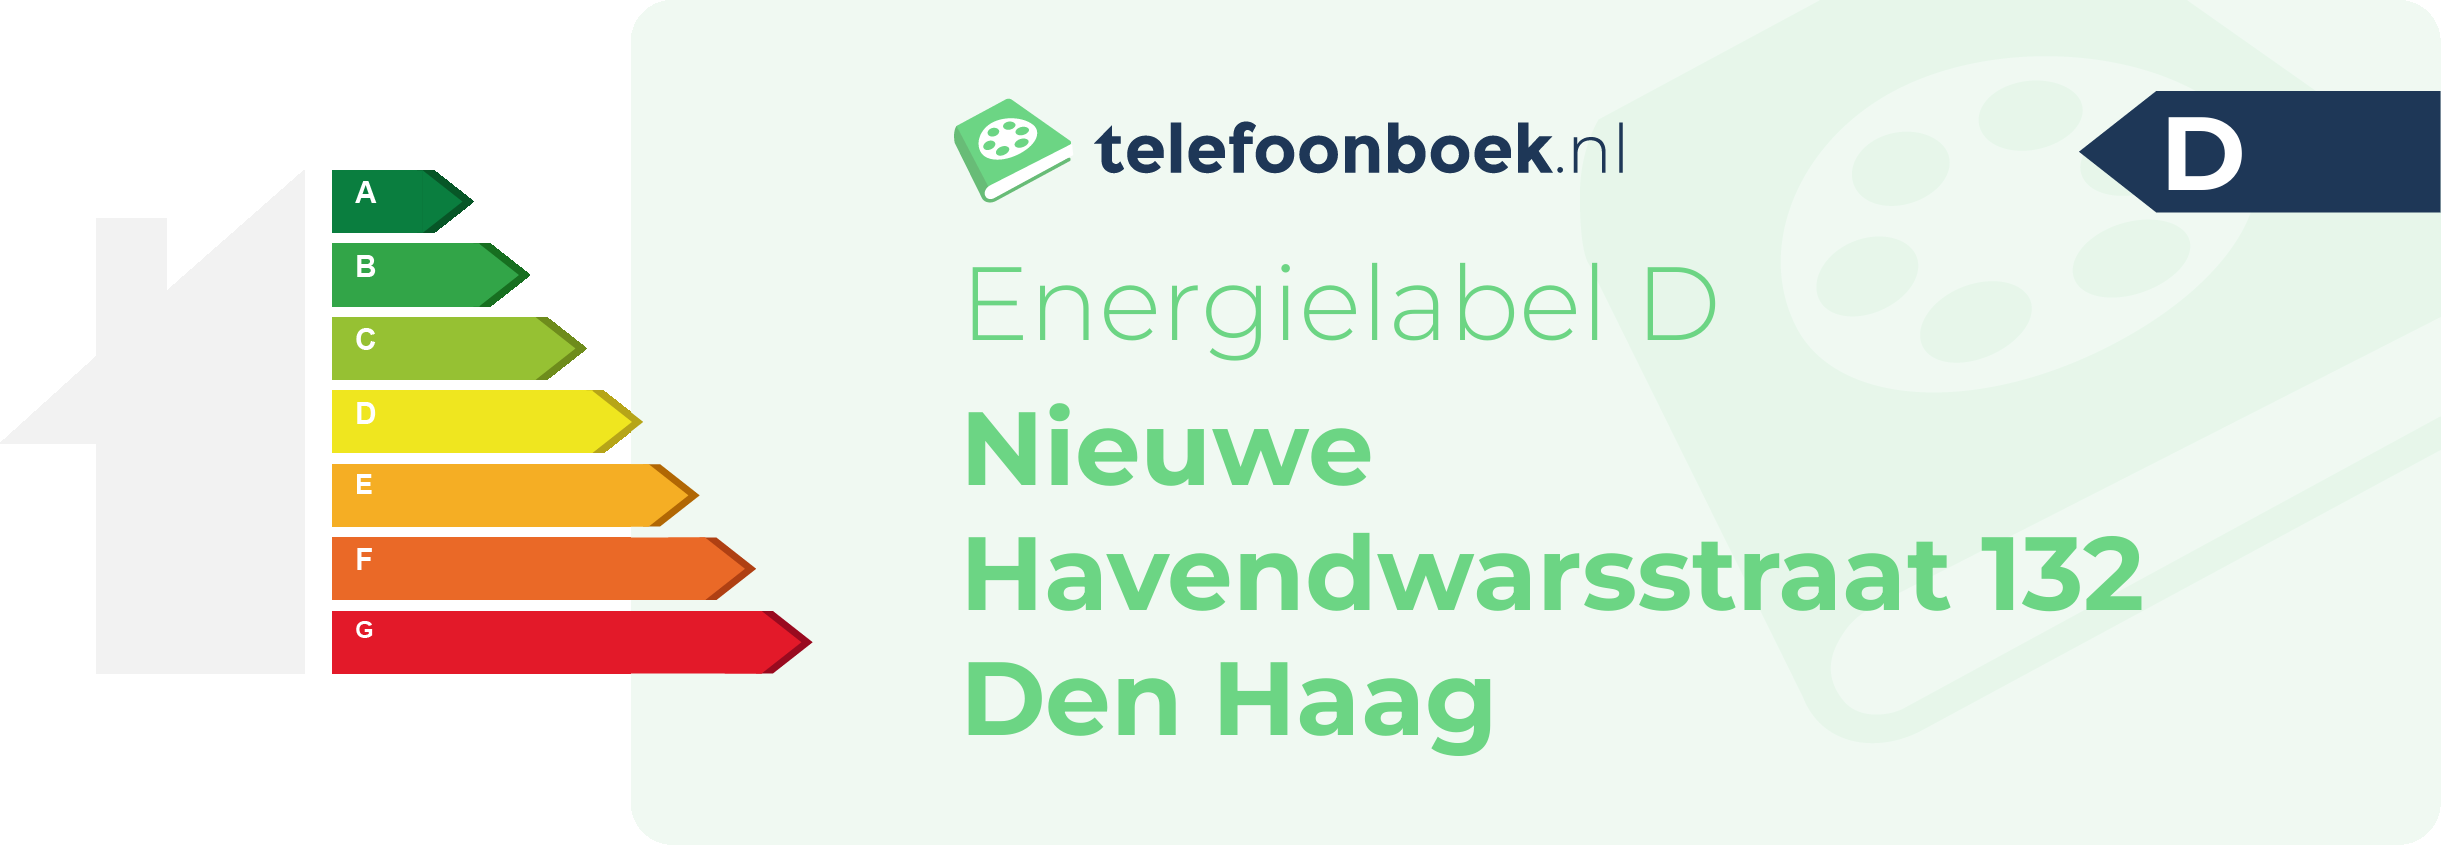 Energielabel Nieuwe Havendwarsstraat 132 Den Haag